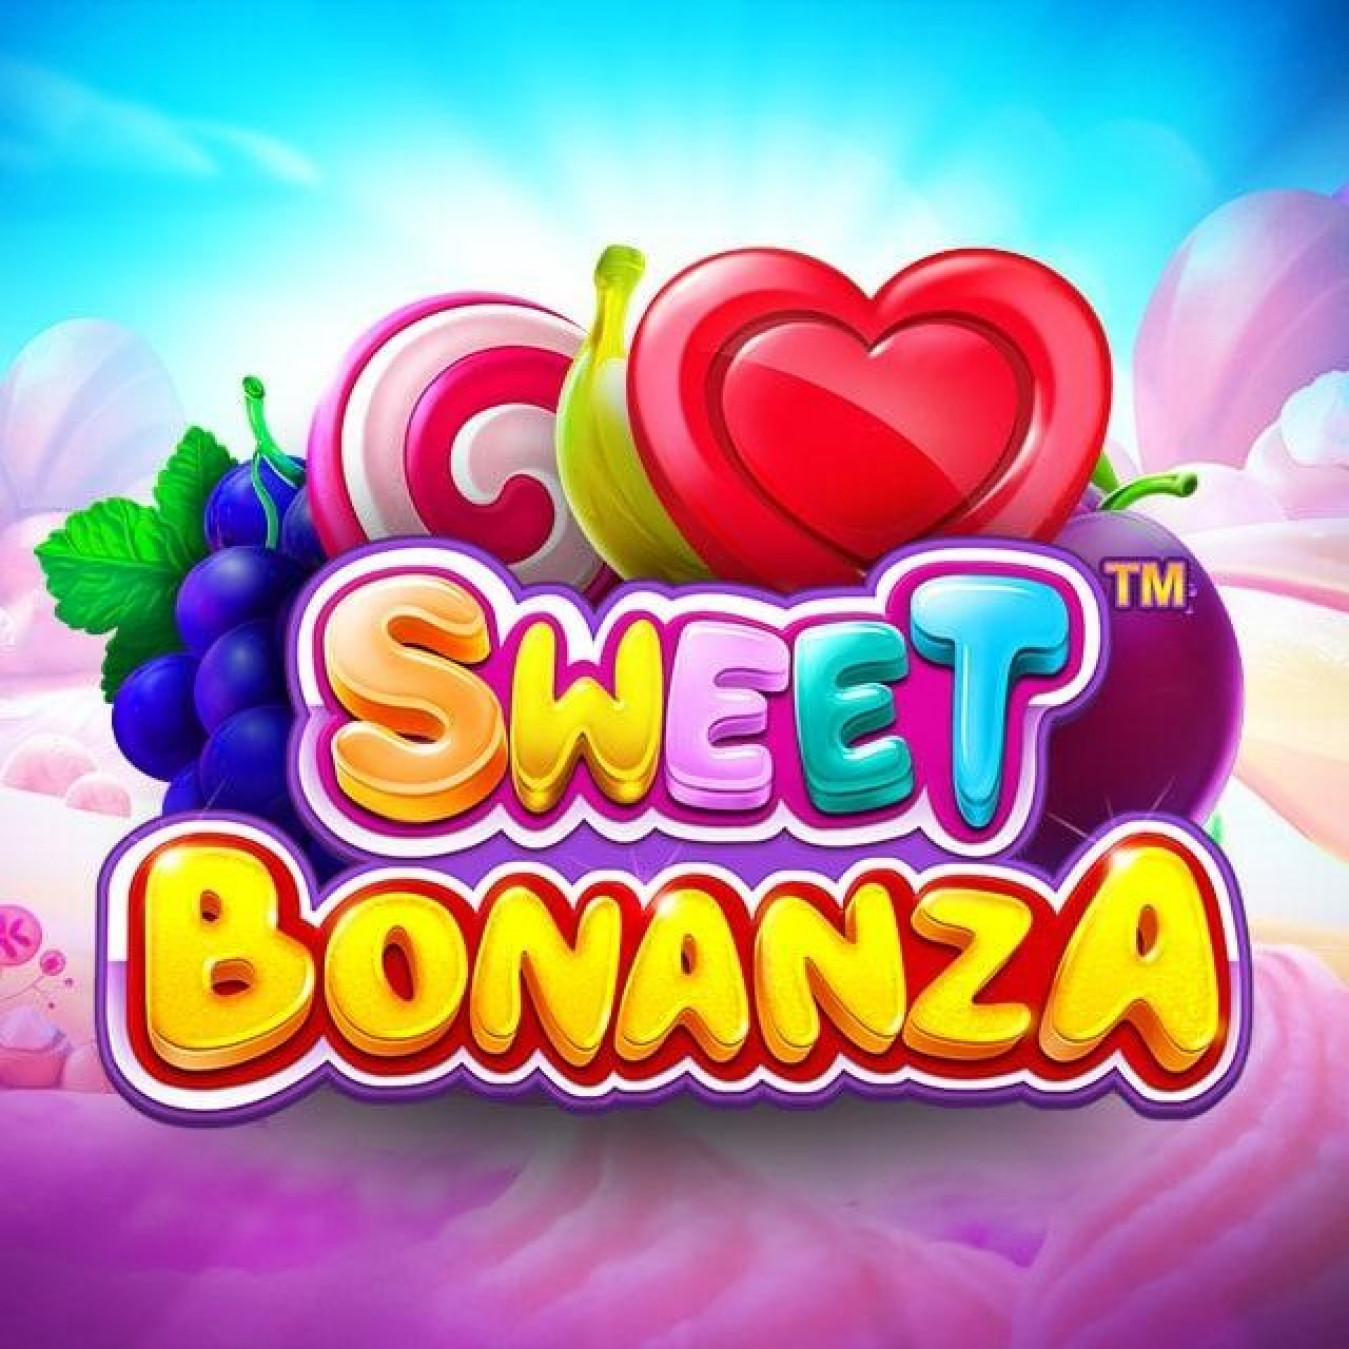 Sweet Bonanza : Descubra a estratégia secreta para ganhar dinheiro